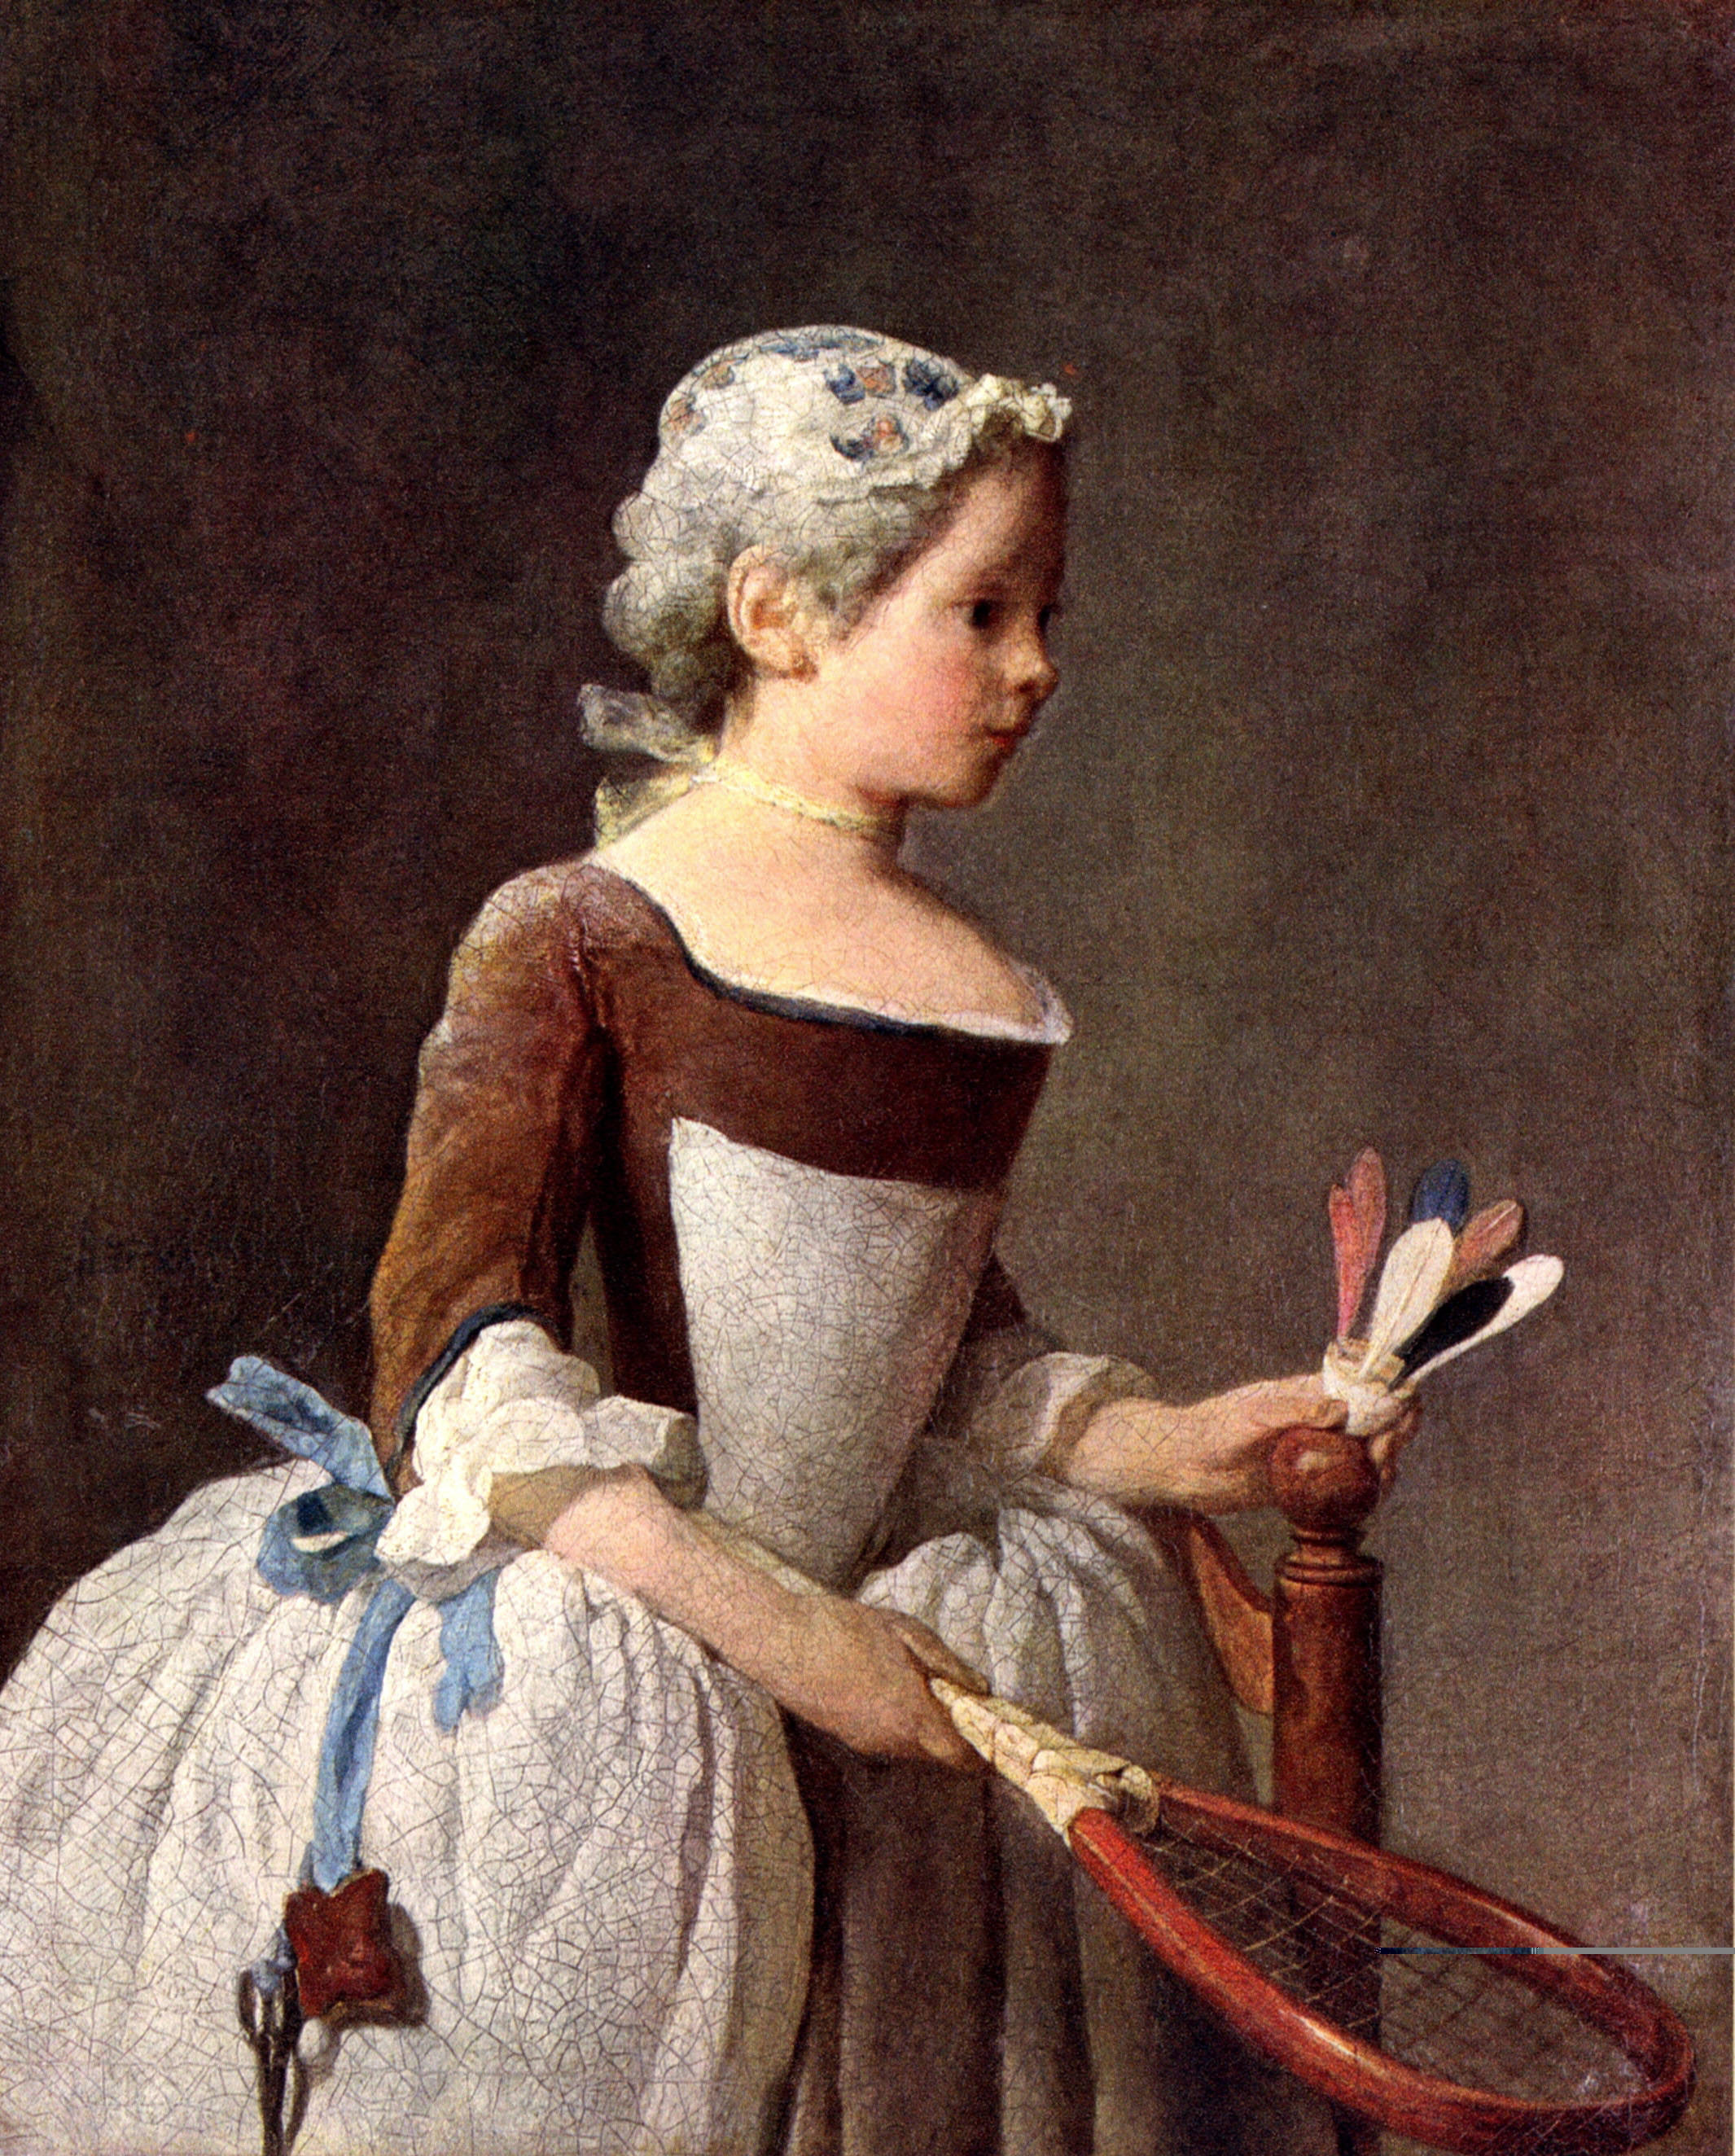 File:Jean-Baptiste Siméon Chardin 002.jpg - Wikimedia Commons